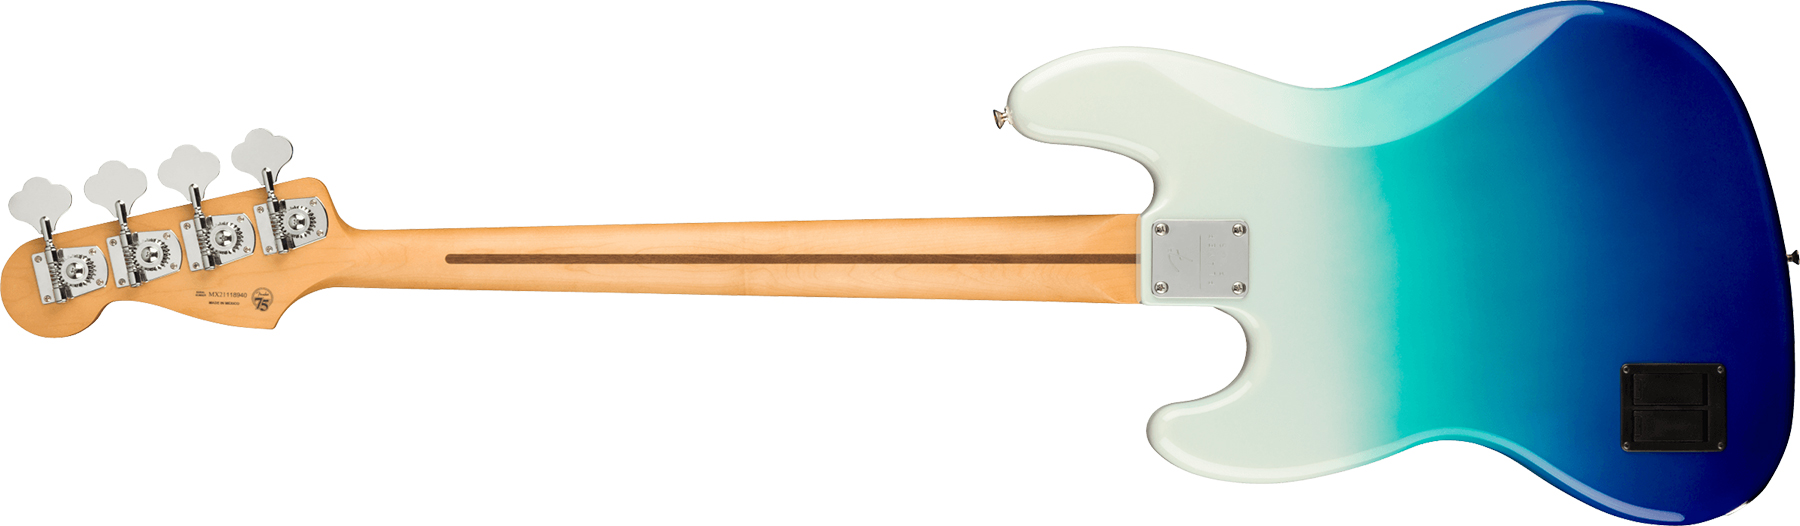 Fender Jazz Bass Player Plus Mex Active Pf - Belair Blue - Basse Électrique Solid Body - Variation 1